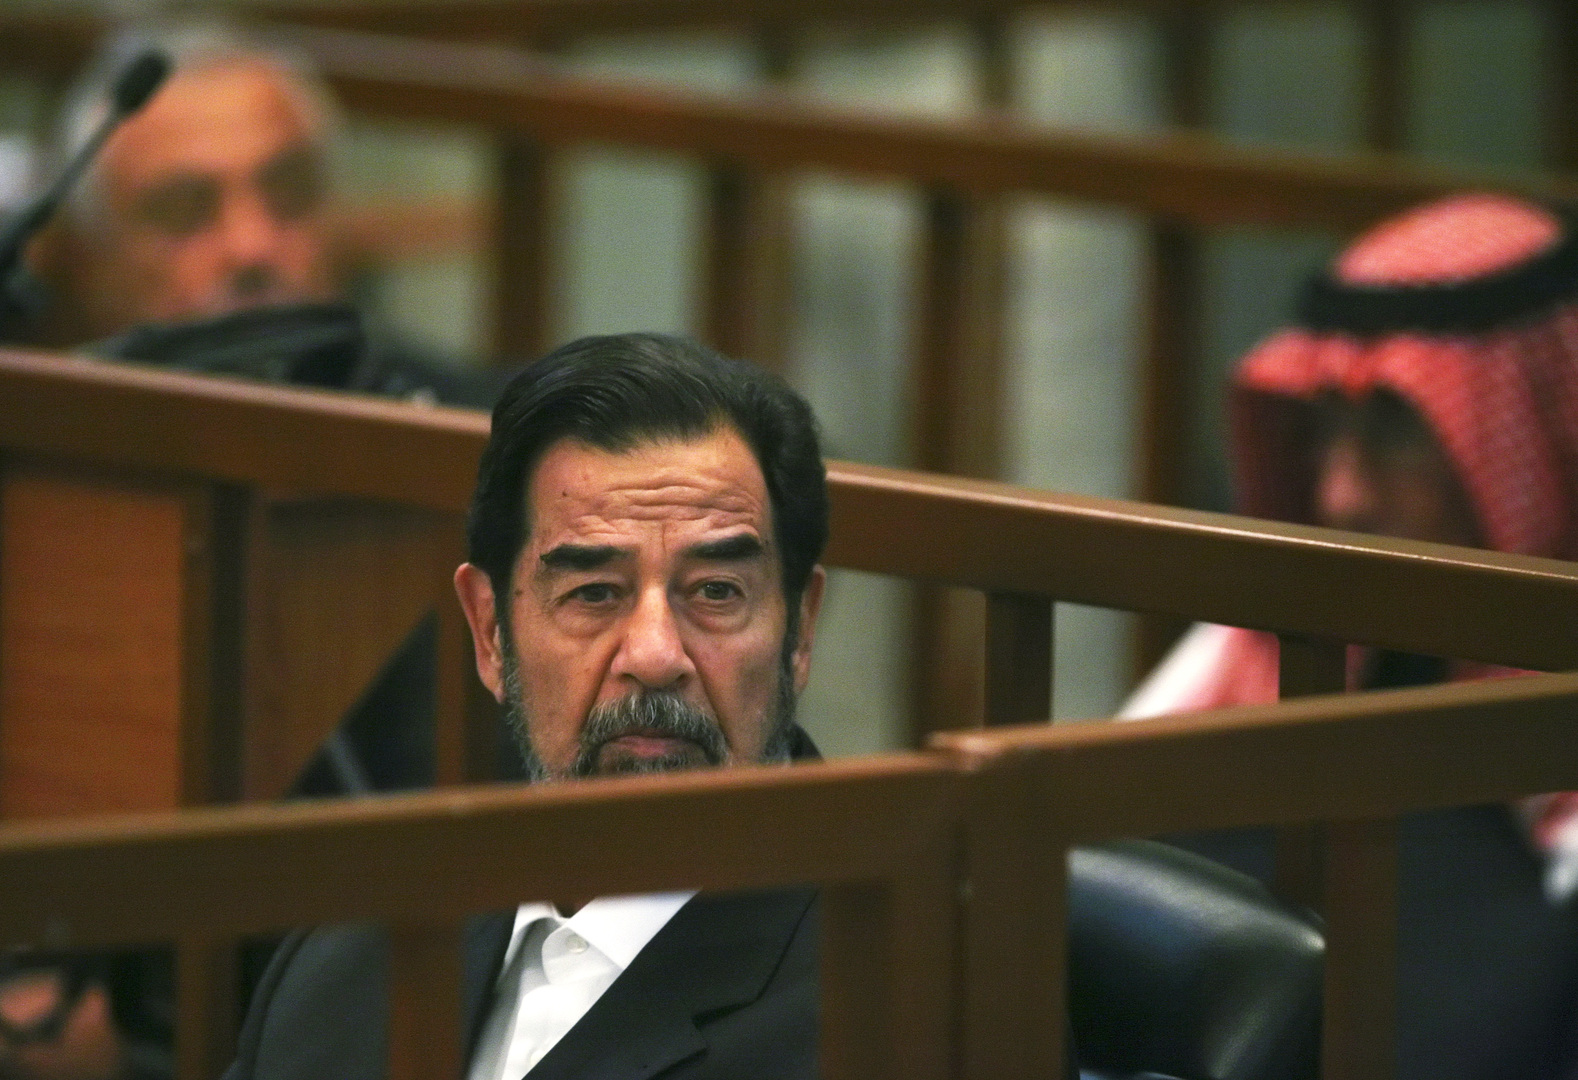 السفير الأمريكي السابق في العراق: محاكمة صدام حسين لم تكن مثالية